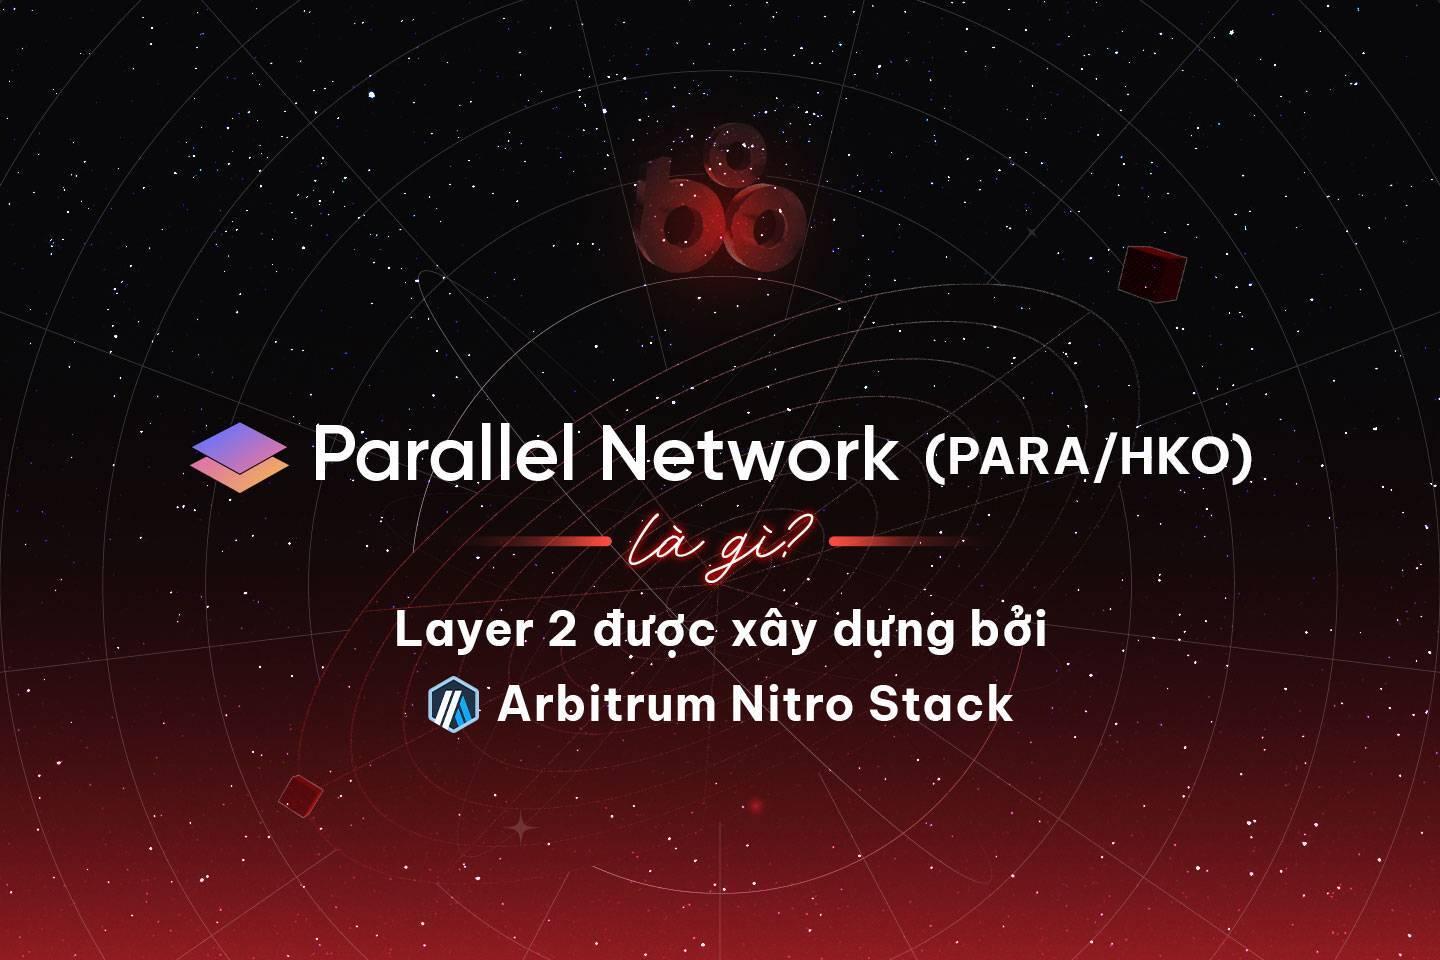 parallel-network-parahko-la-gi-layer-2-duoc-xay-dung-boi-arbitrum-nitro-stack